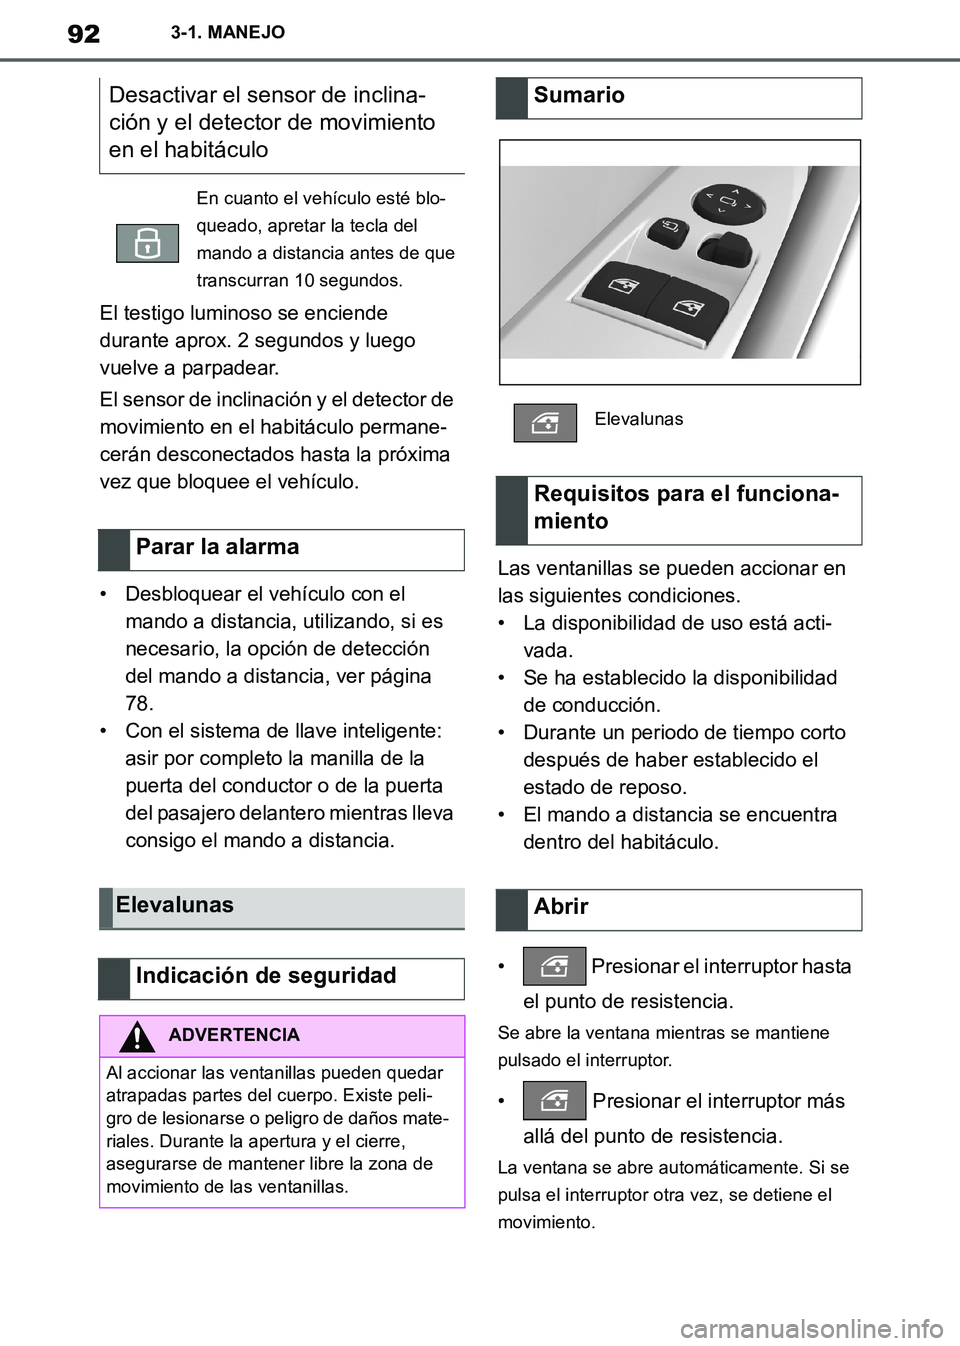 TOYOTA SUPRA 2019  Manuale de Empleo (in Spanish) 92
Supra Owners Manual_ES
3-1. MANEJO
El testigo luminoso se enciende 
durante aprox. 2 segundos y luego 
vuelve a parpadear.
El sensor de inclinación y el detector de 
movimiento en el habitáculo 